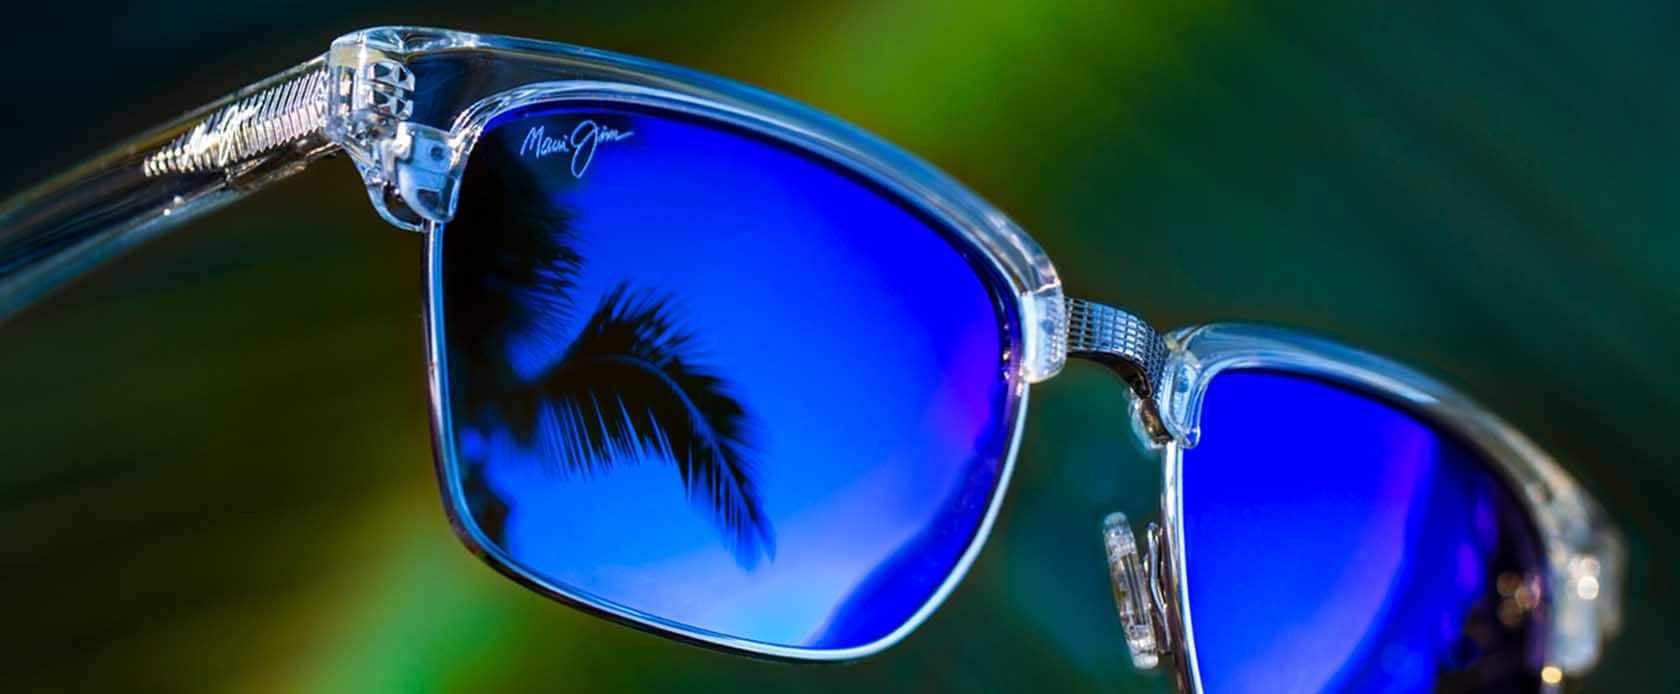 Cuidado y limpieza de los lentes de sol | Maui Jim®